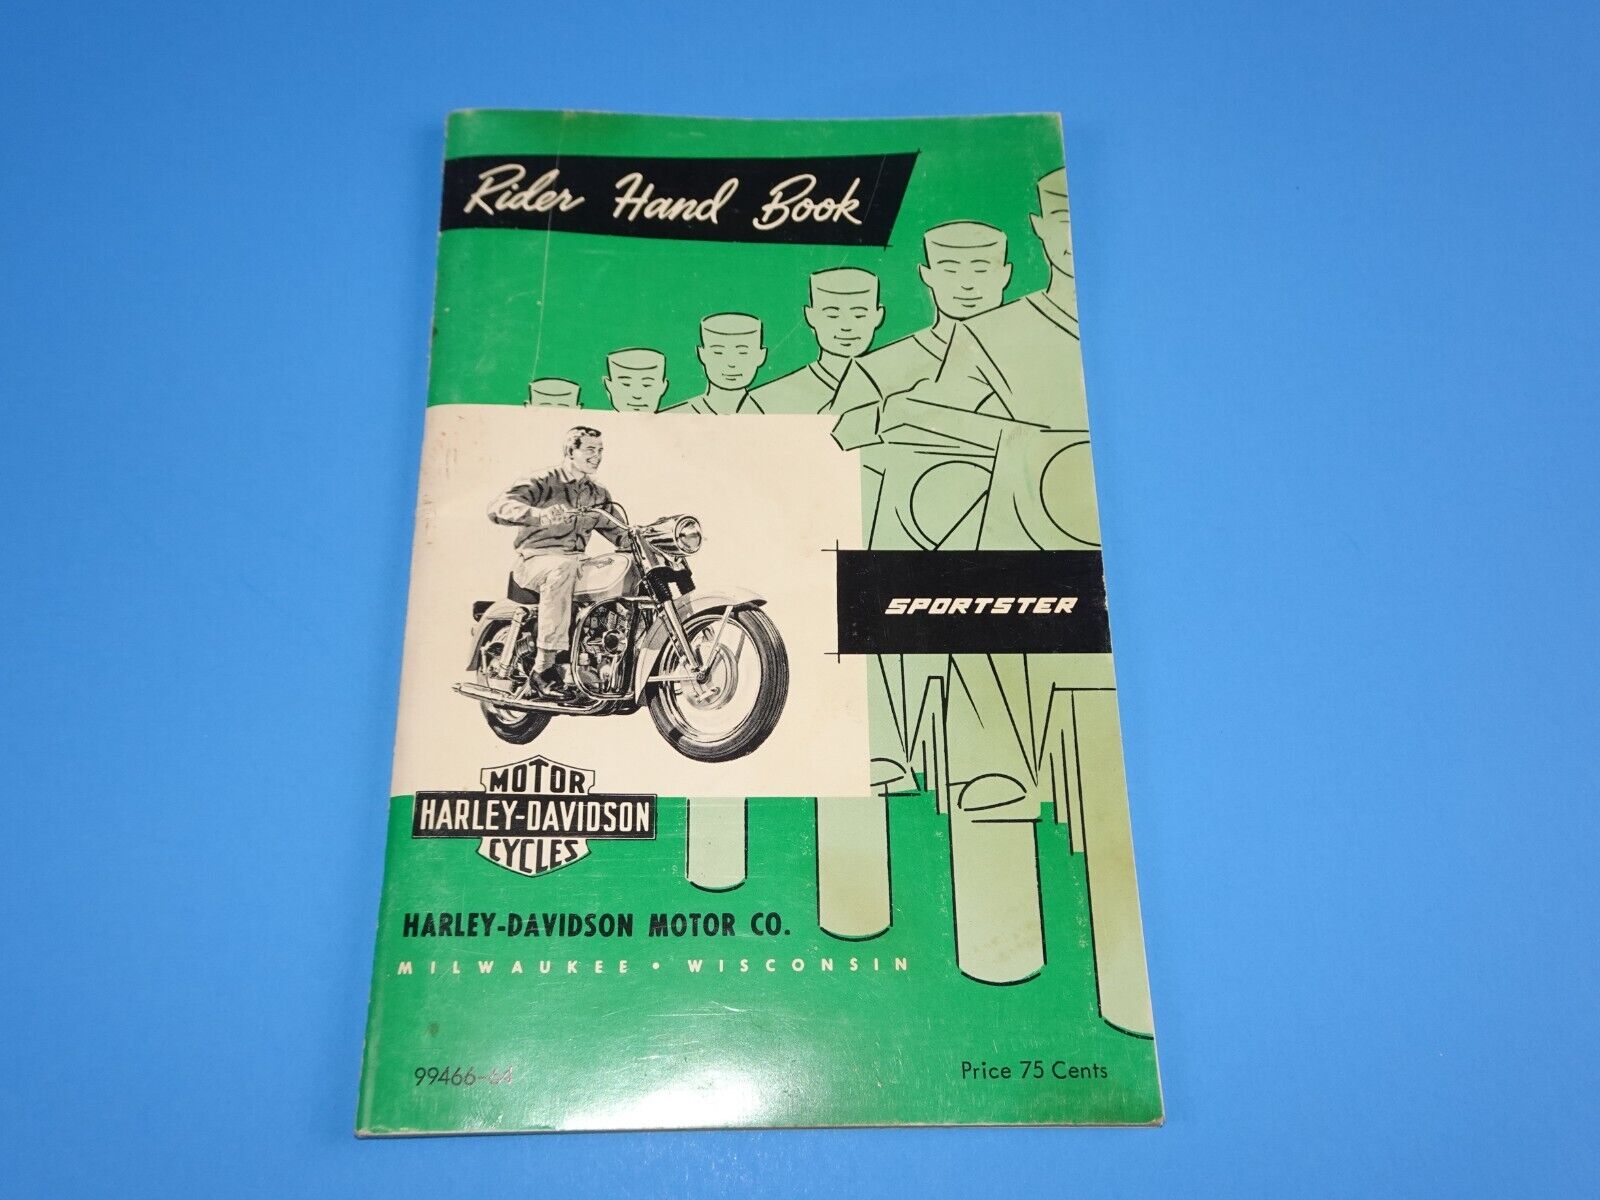 Harley-Davidson Original Sportster Rider\'s Hand Book 99466-64 1964 SUPER CLEAN